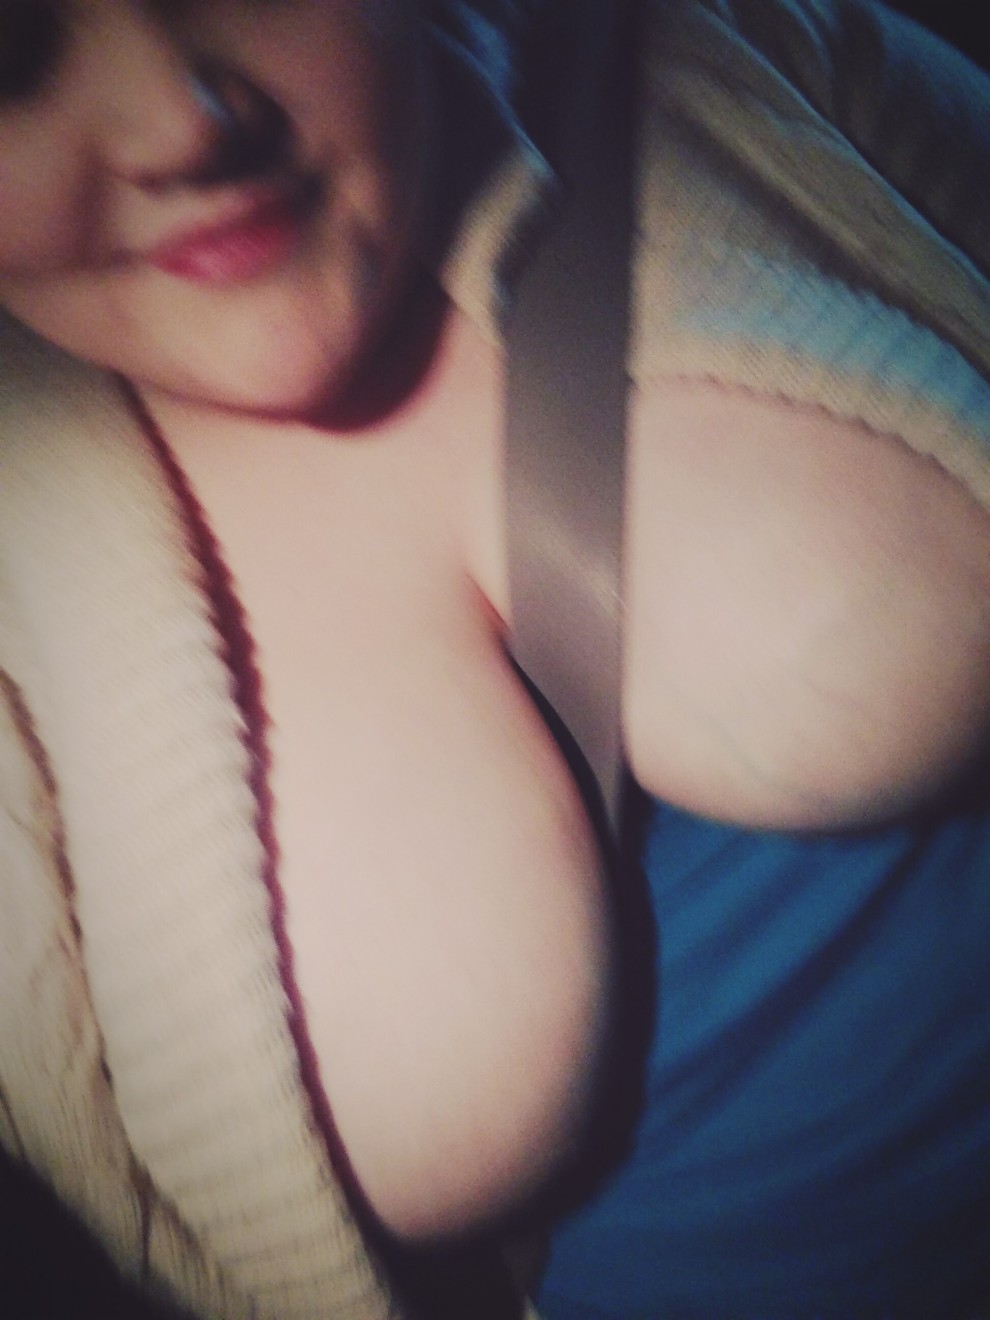 seatbelt boobs